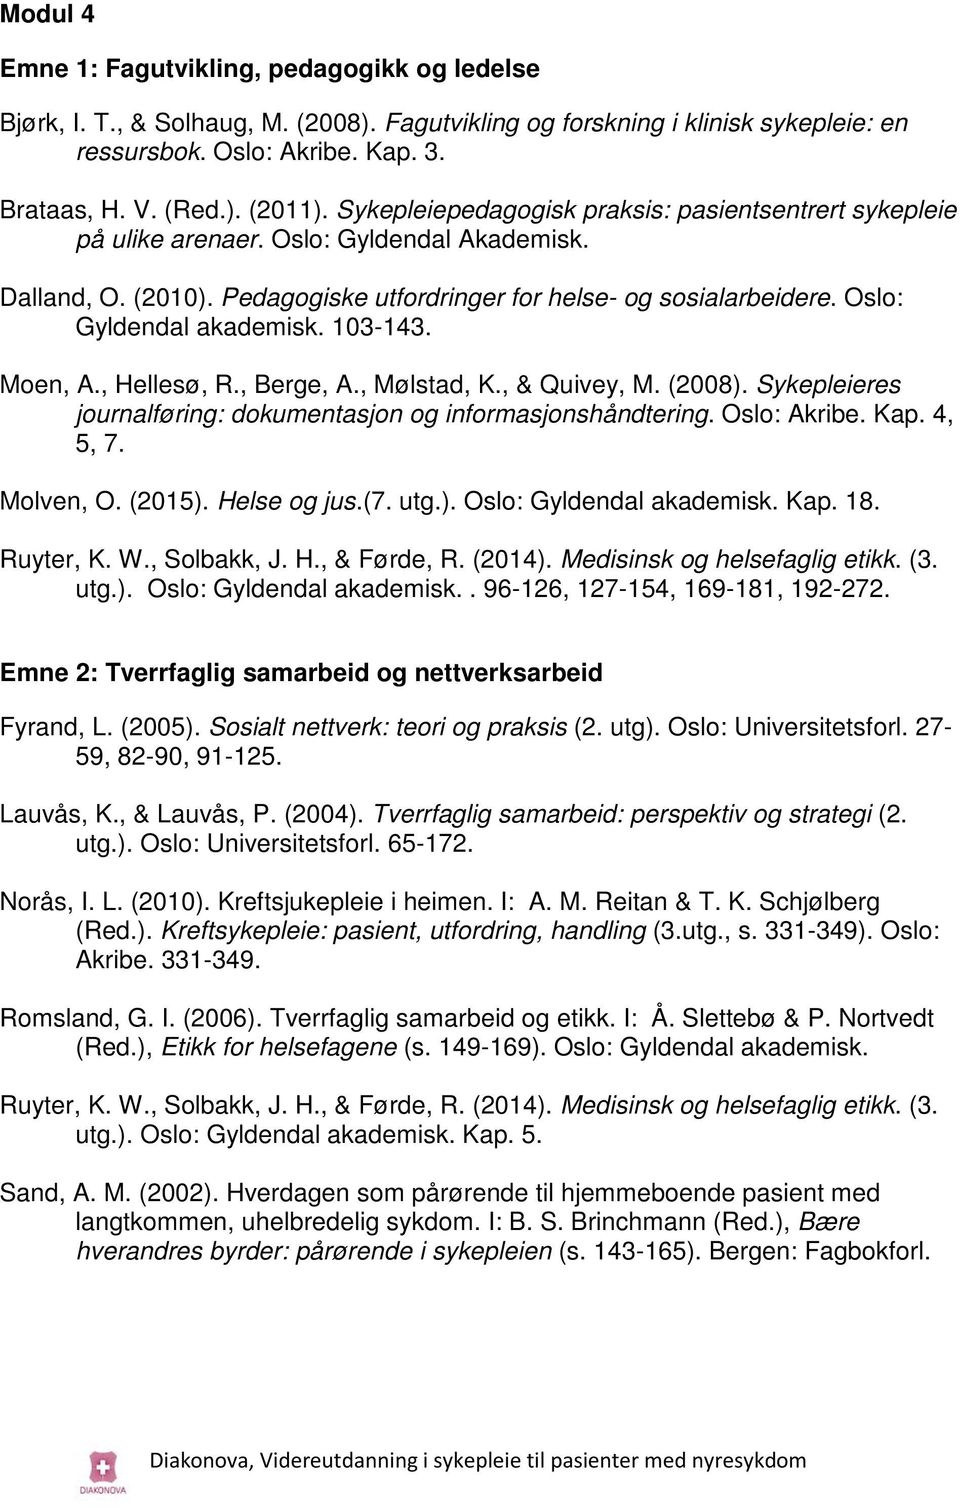 Oslo: Gyldendal akademisk. 103-143. Moen, A., Hellesø, R., Berge, A., Mølstad, K., & Quivey, M. (2008). Sykepleieres journalføring: dokumentasjon og informasjonshåndtering. Oslo: Akribe. Kap. 4, 5, 7.